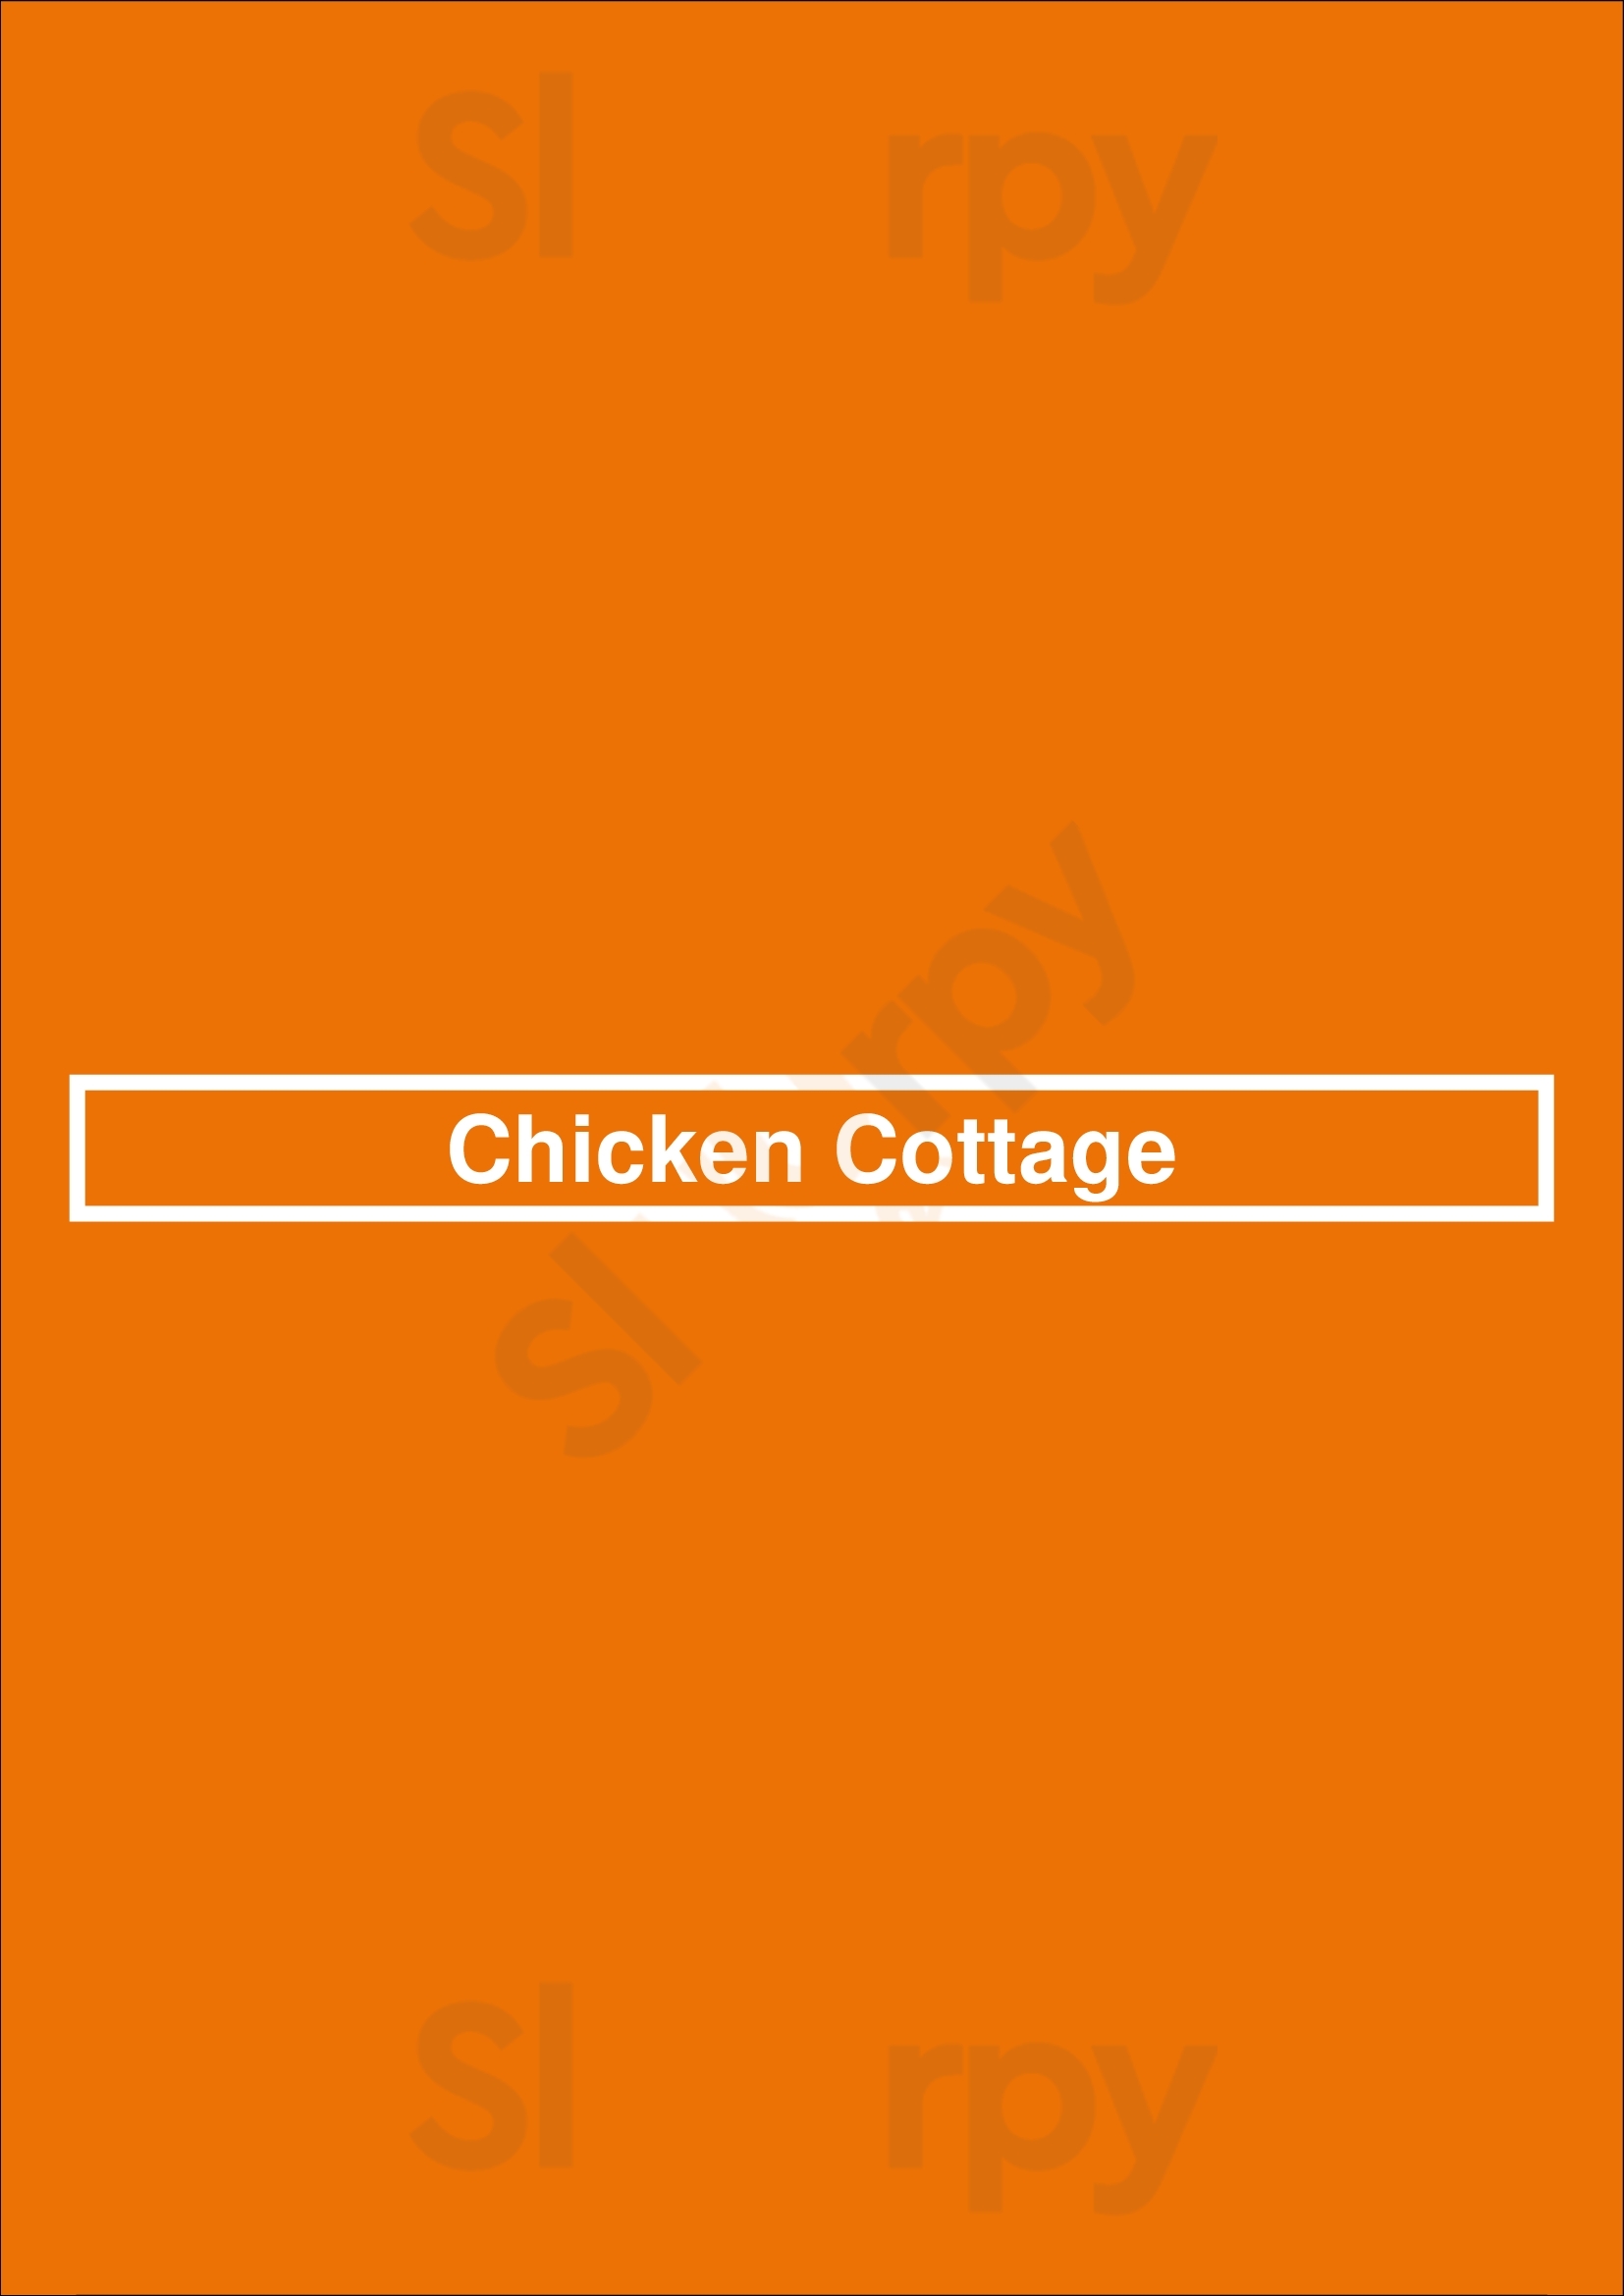 Chicken Cottage London Menu - 1